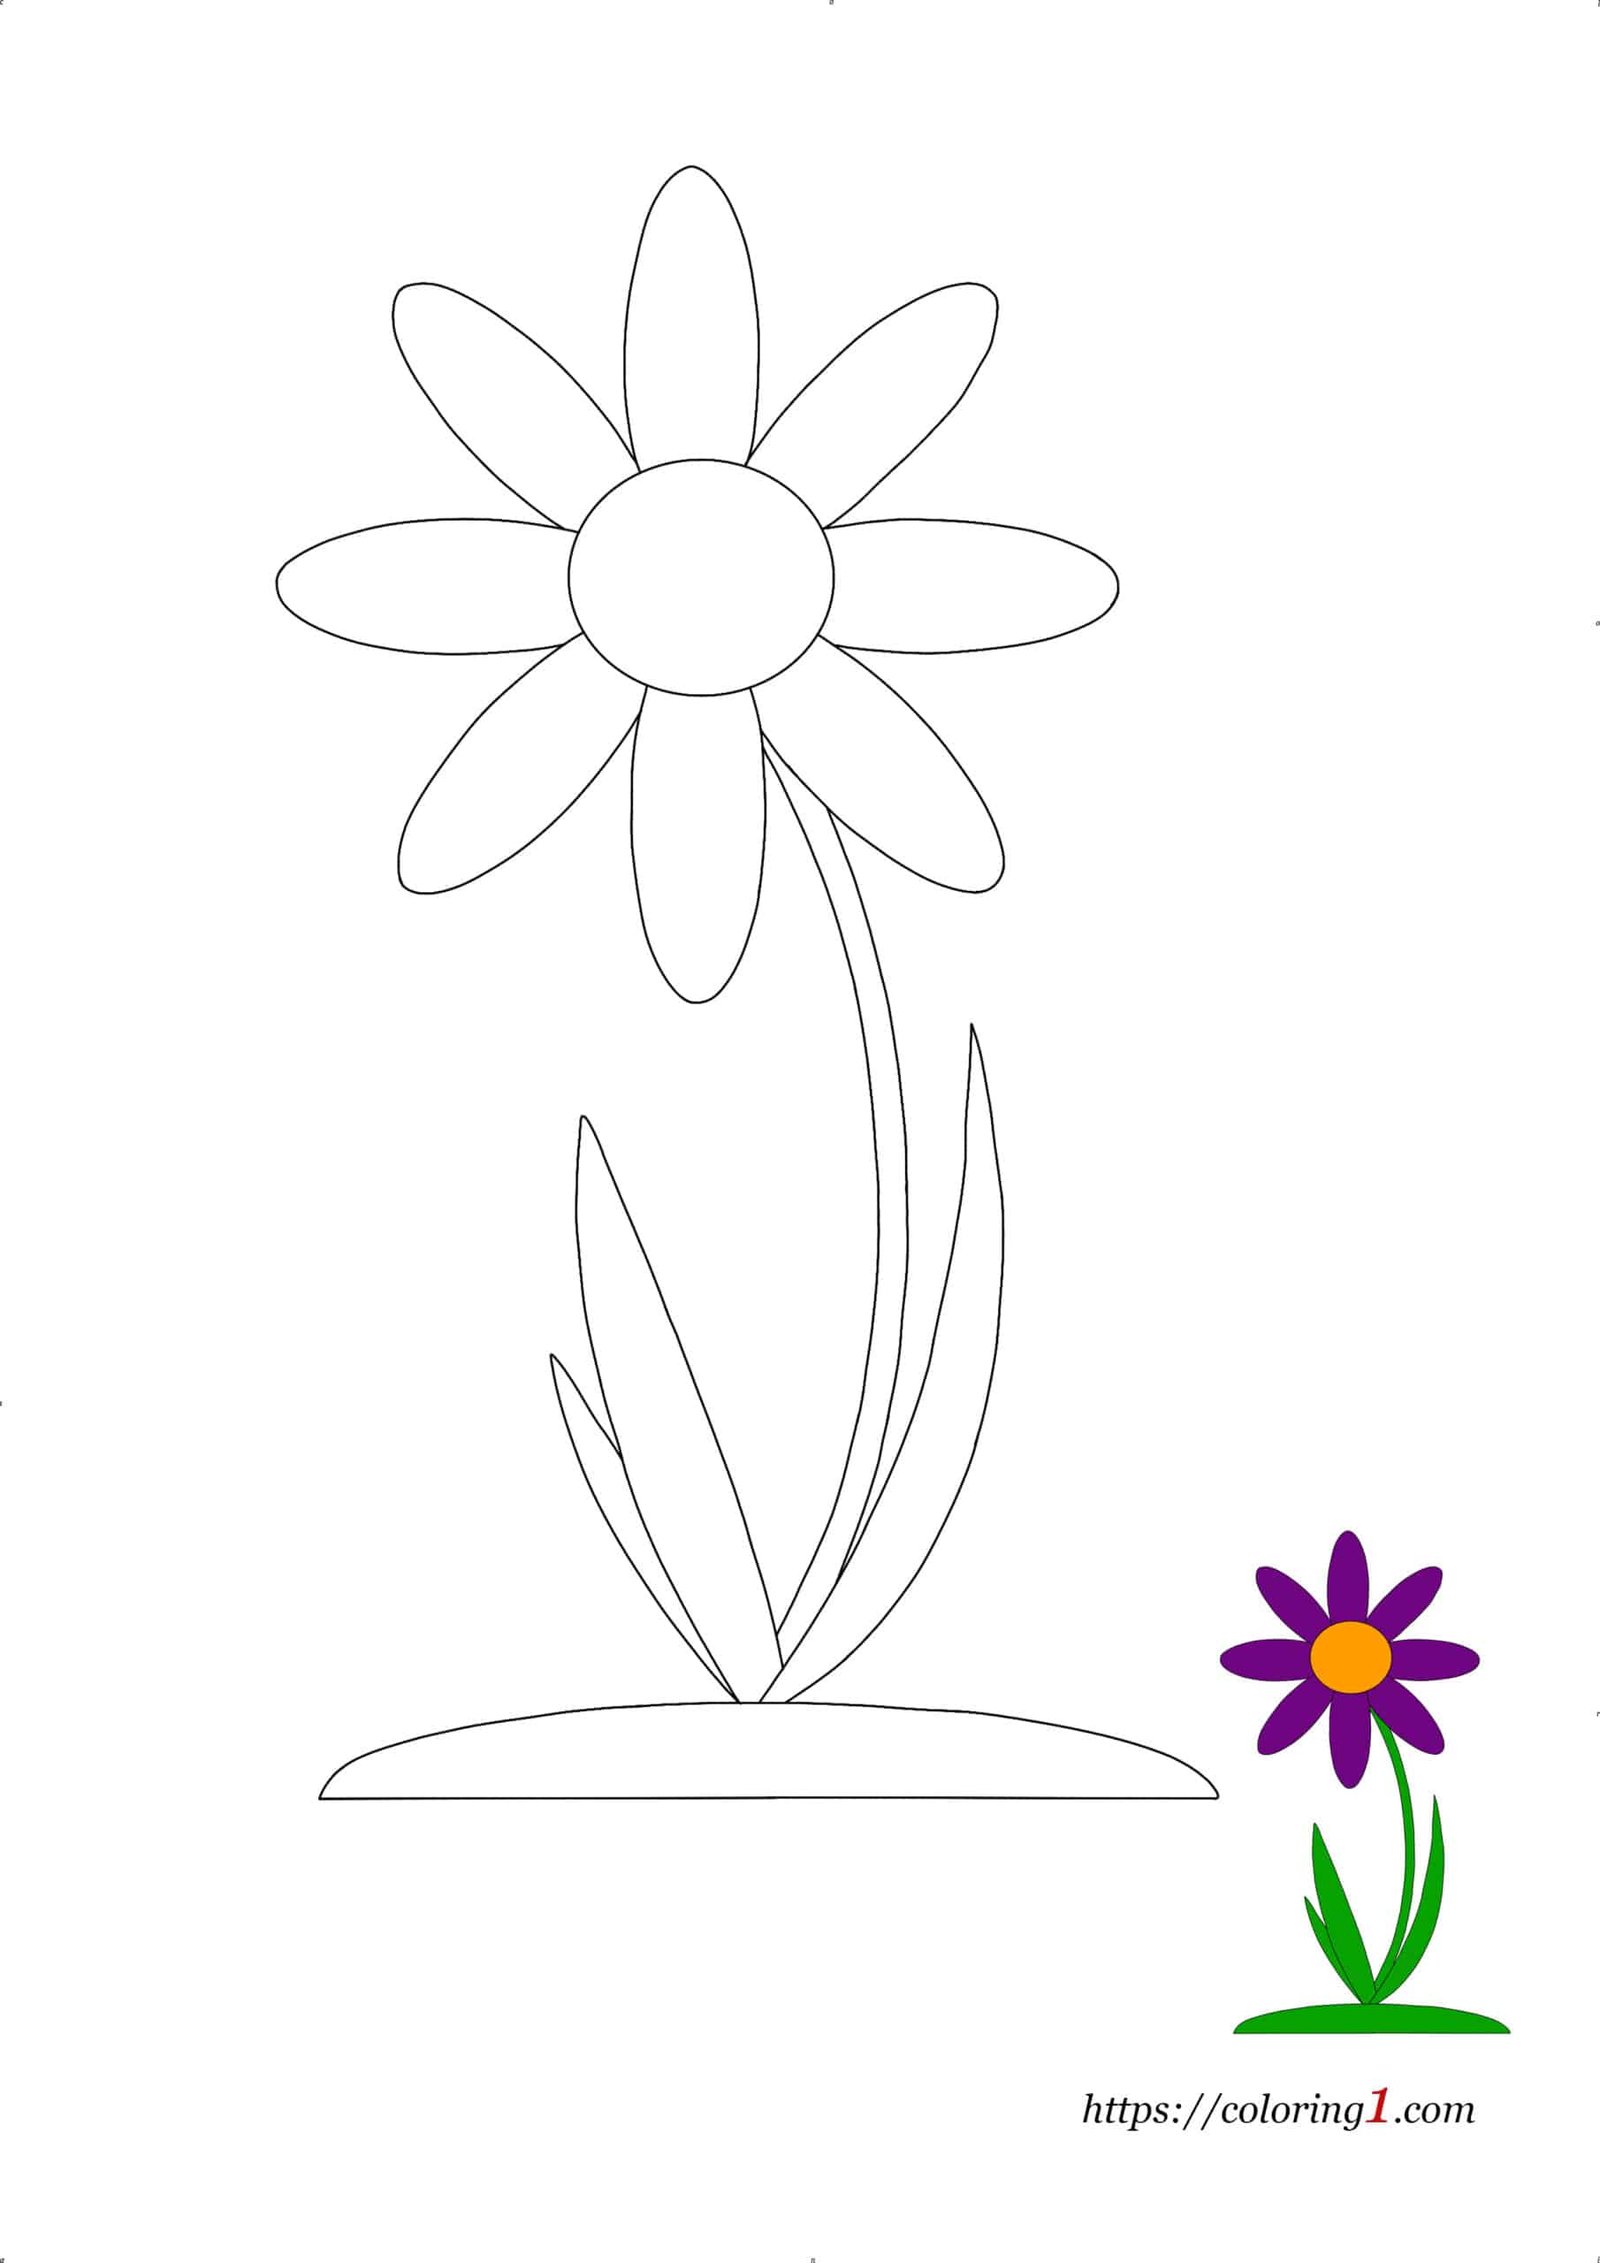 Coloriage Dessin De Fleur Simple à imprimer gratuit